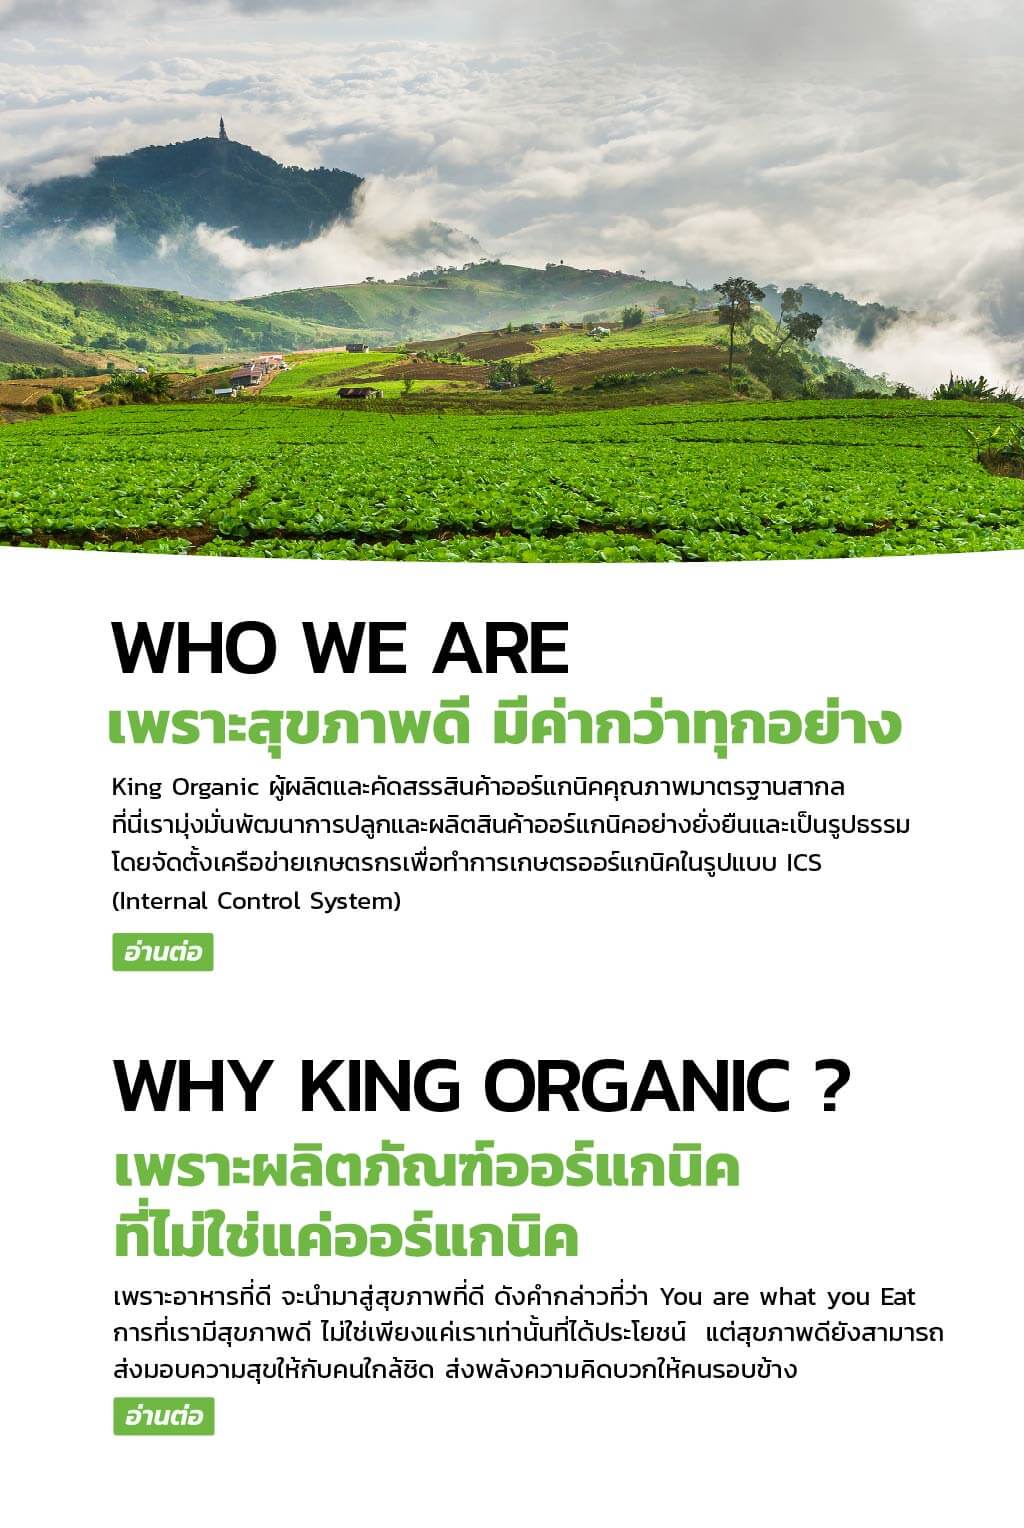 ที่ King Organic เรามุ่งมั่น ส่งเสริม สร้างสรรค์ผลิตภัณฑ์ทางการเกษตรที่สะอาด ปลอดภัย เป็นมิตรต่อสุขภาพ และที่สำคัญ ต้องเป็นมิตรกับสิ่งแวดล้อม เพราะอาหารที่ดี จะนำมาสู่สุขภาพที่ดี ดังคำกล่าวที่ว่า You are what you Eat